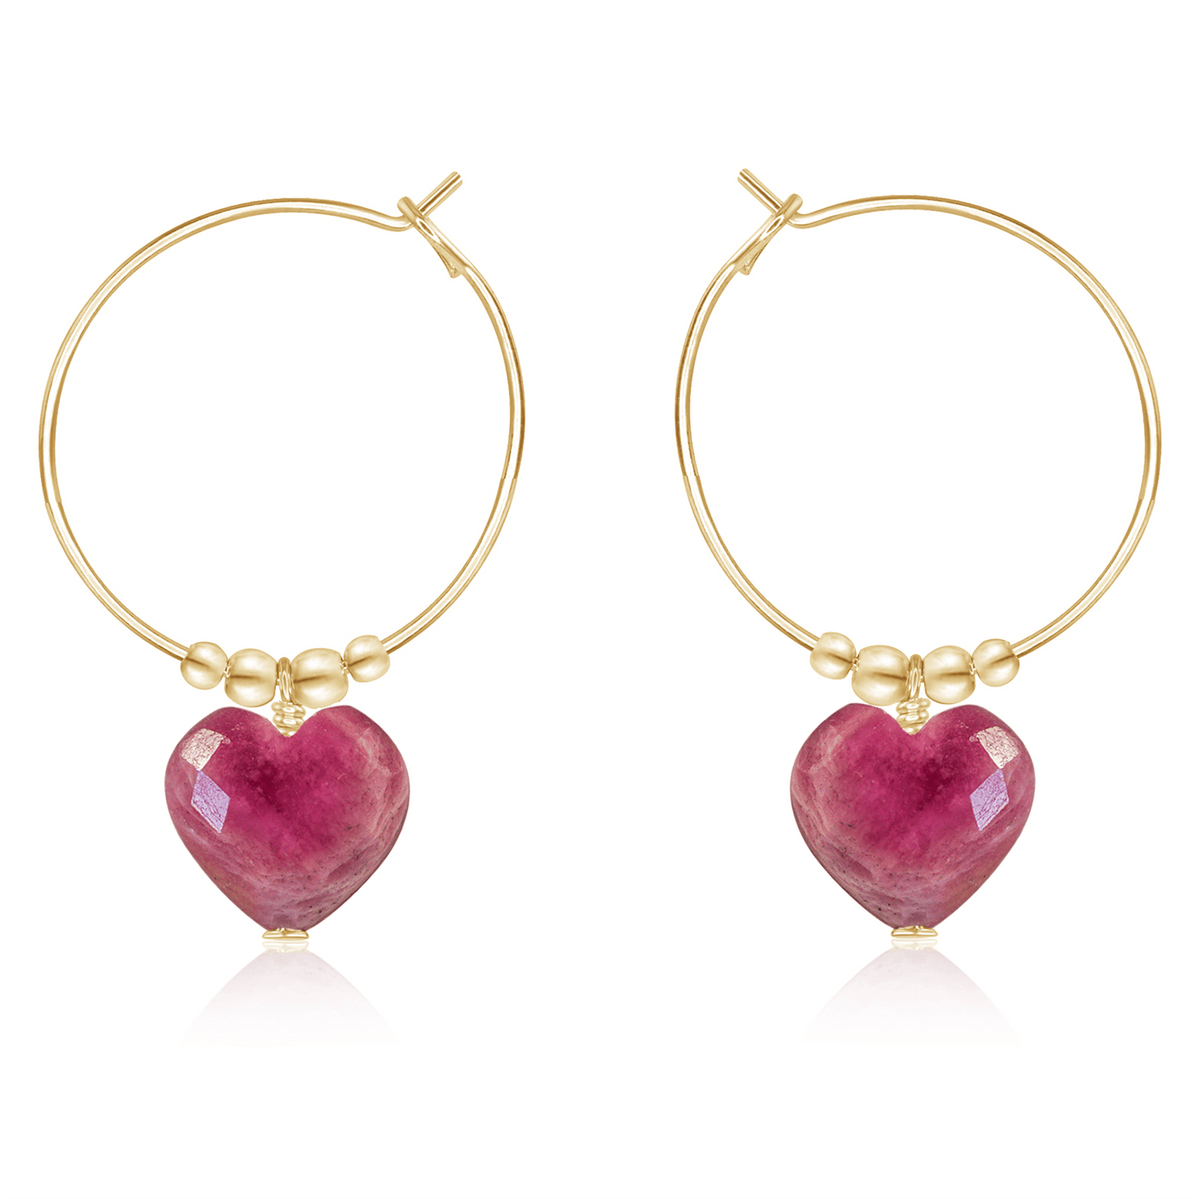 Ruby Crystal Heart Dangle Hoop Earrings - Ruby Crystal Heart Dangle Hoop Earrings - 14k Gold Fill - Luna Tide Handmade Crystal Jewellery